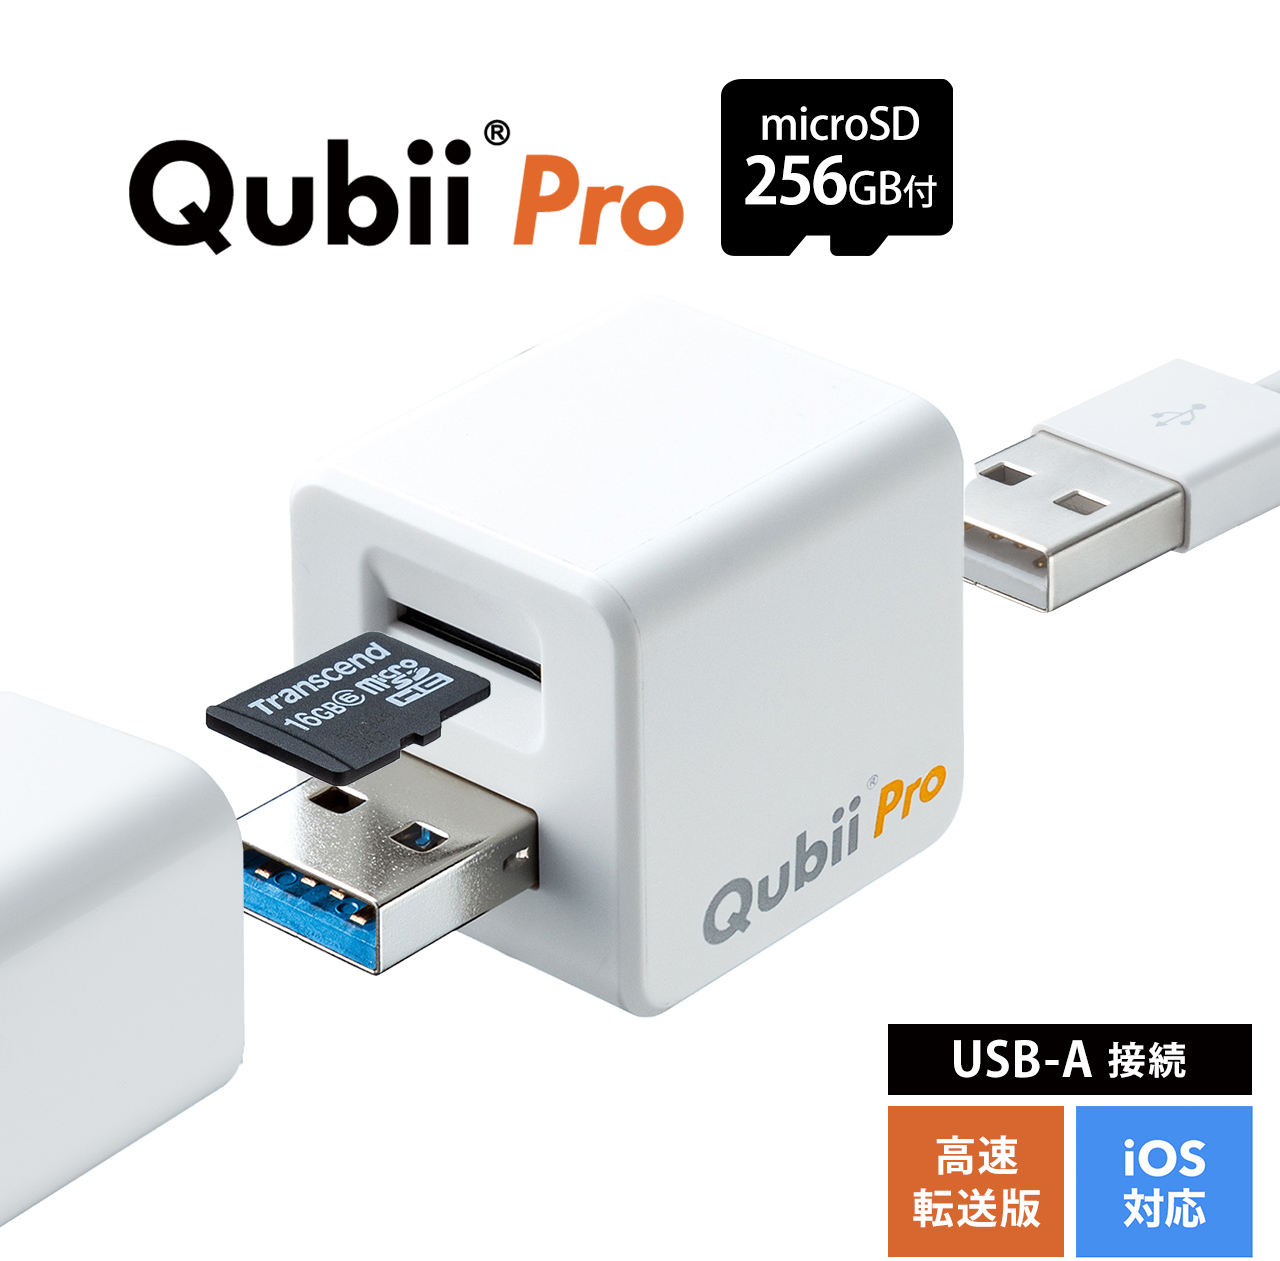 TS256GUSD300S-A付き】Qubii Pro ホワイト microSDカード(256GB)セット 402-ADRIP011256Wの販売商品  通販ならサンワダイレクト